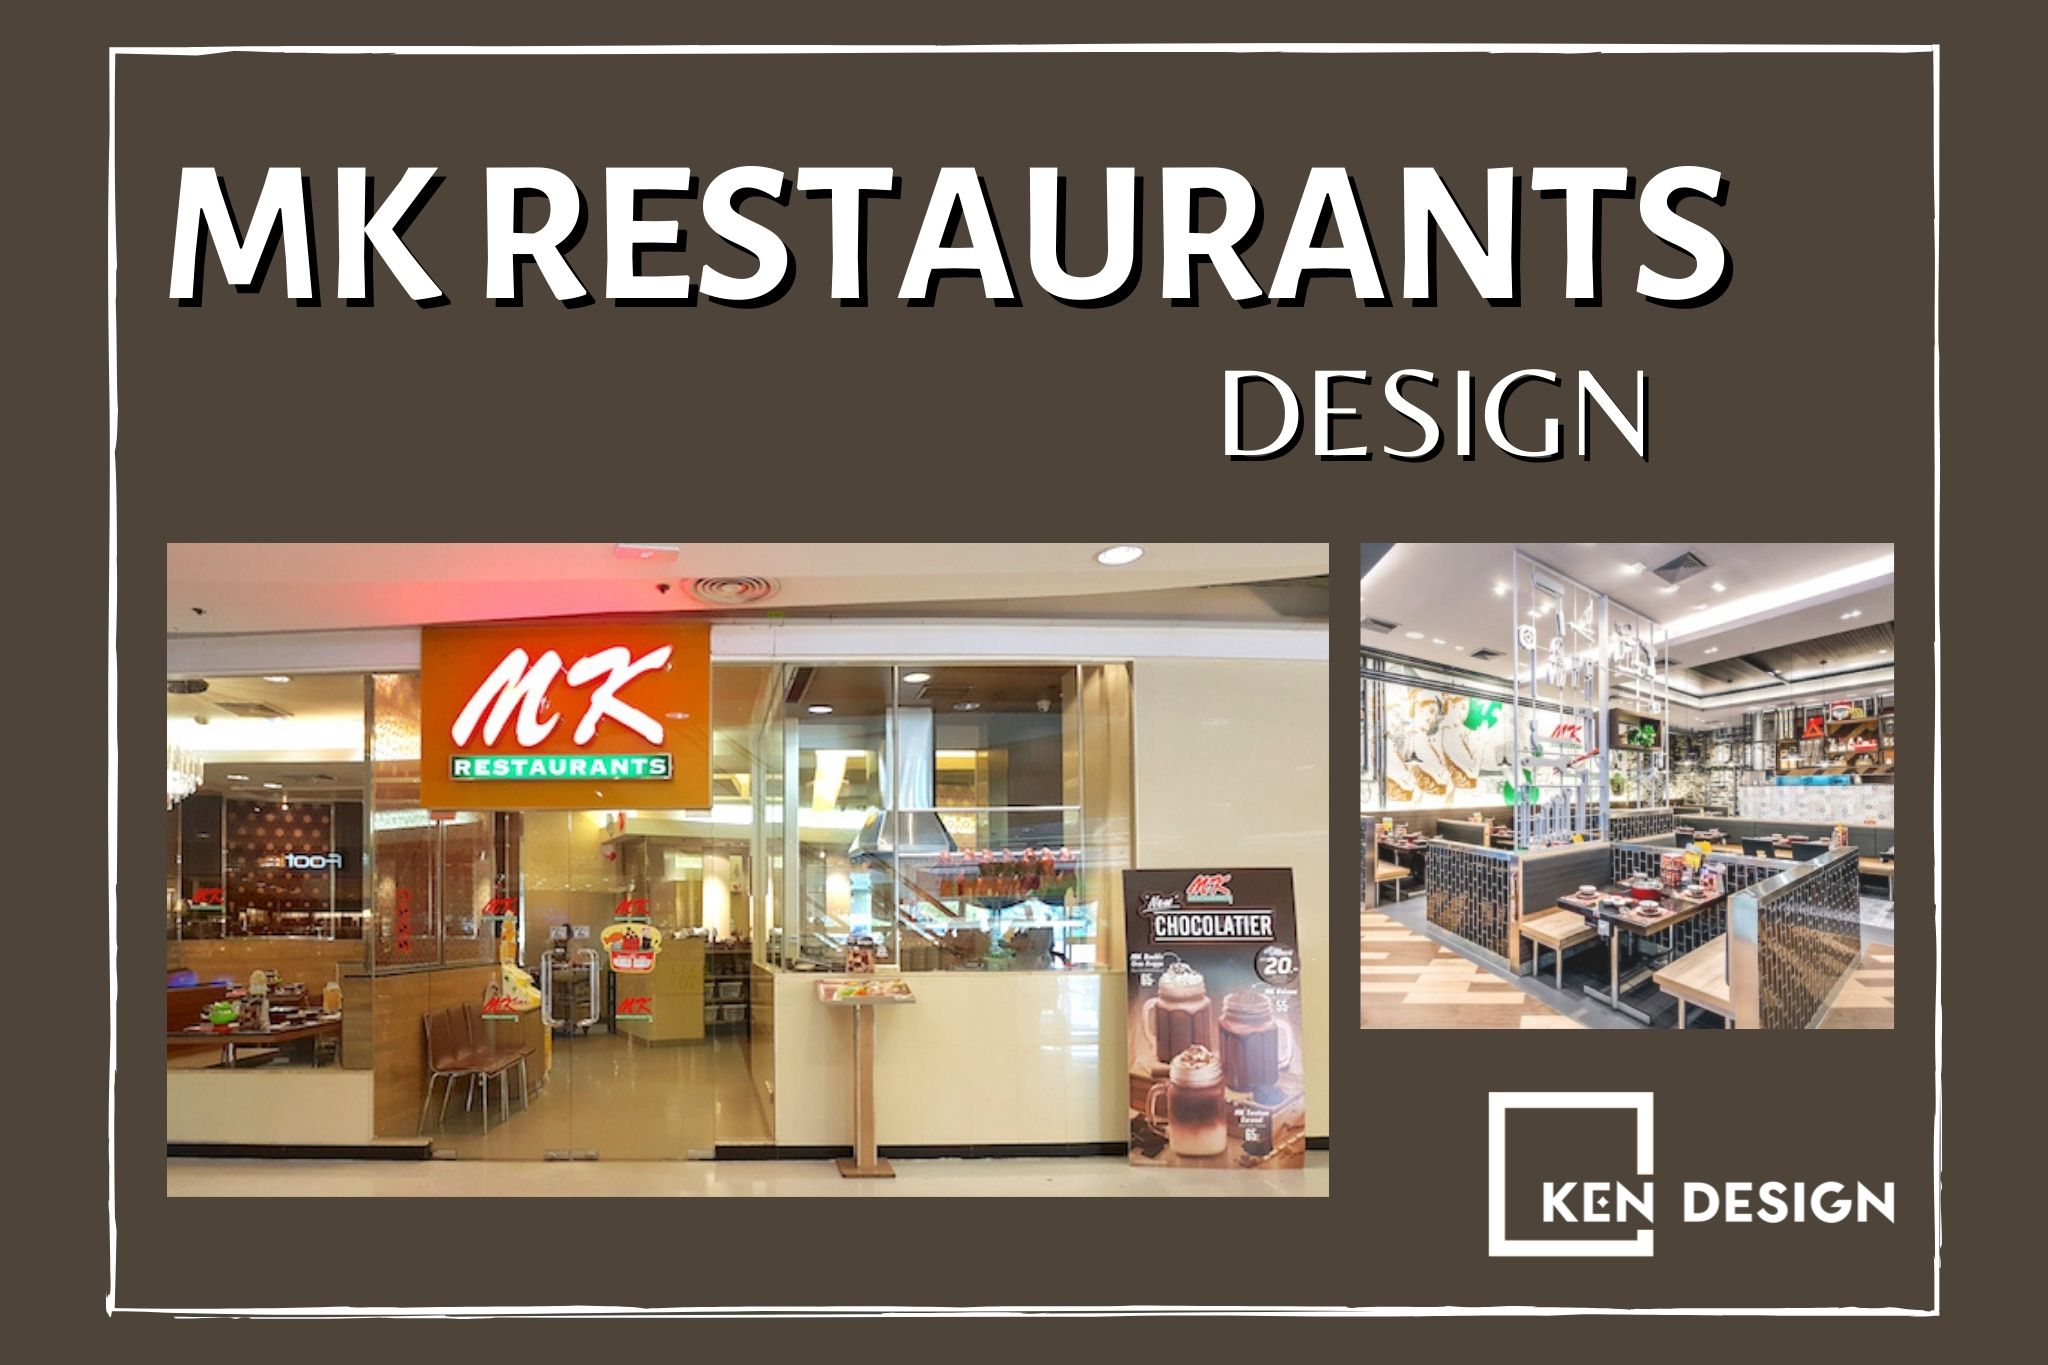 Thiết kế MK Restaurants - Chuỗi nhà hàng lẩu Thái đẹp và hiện đại bậc nhất